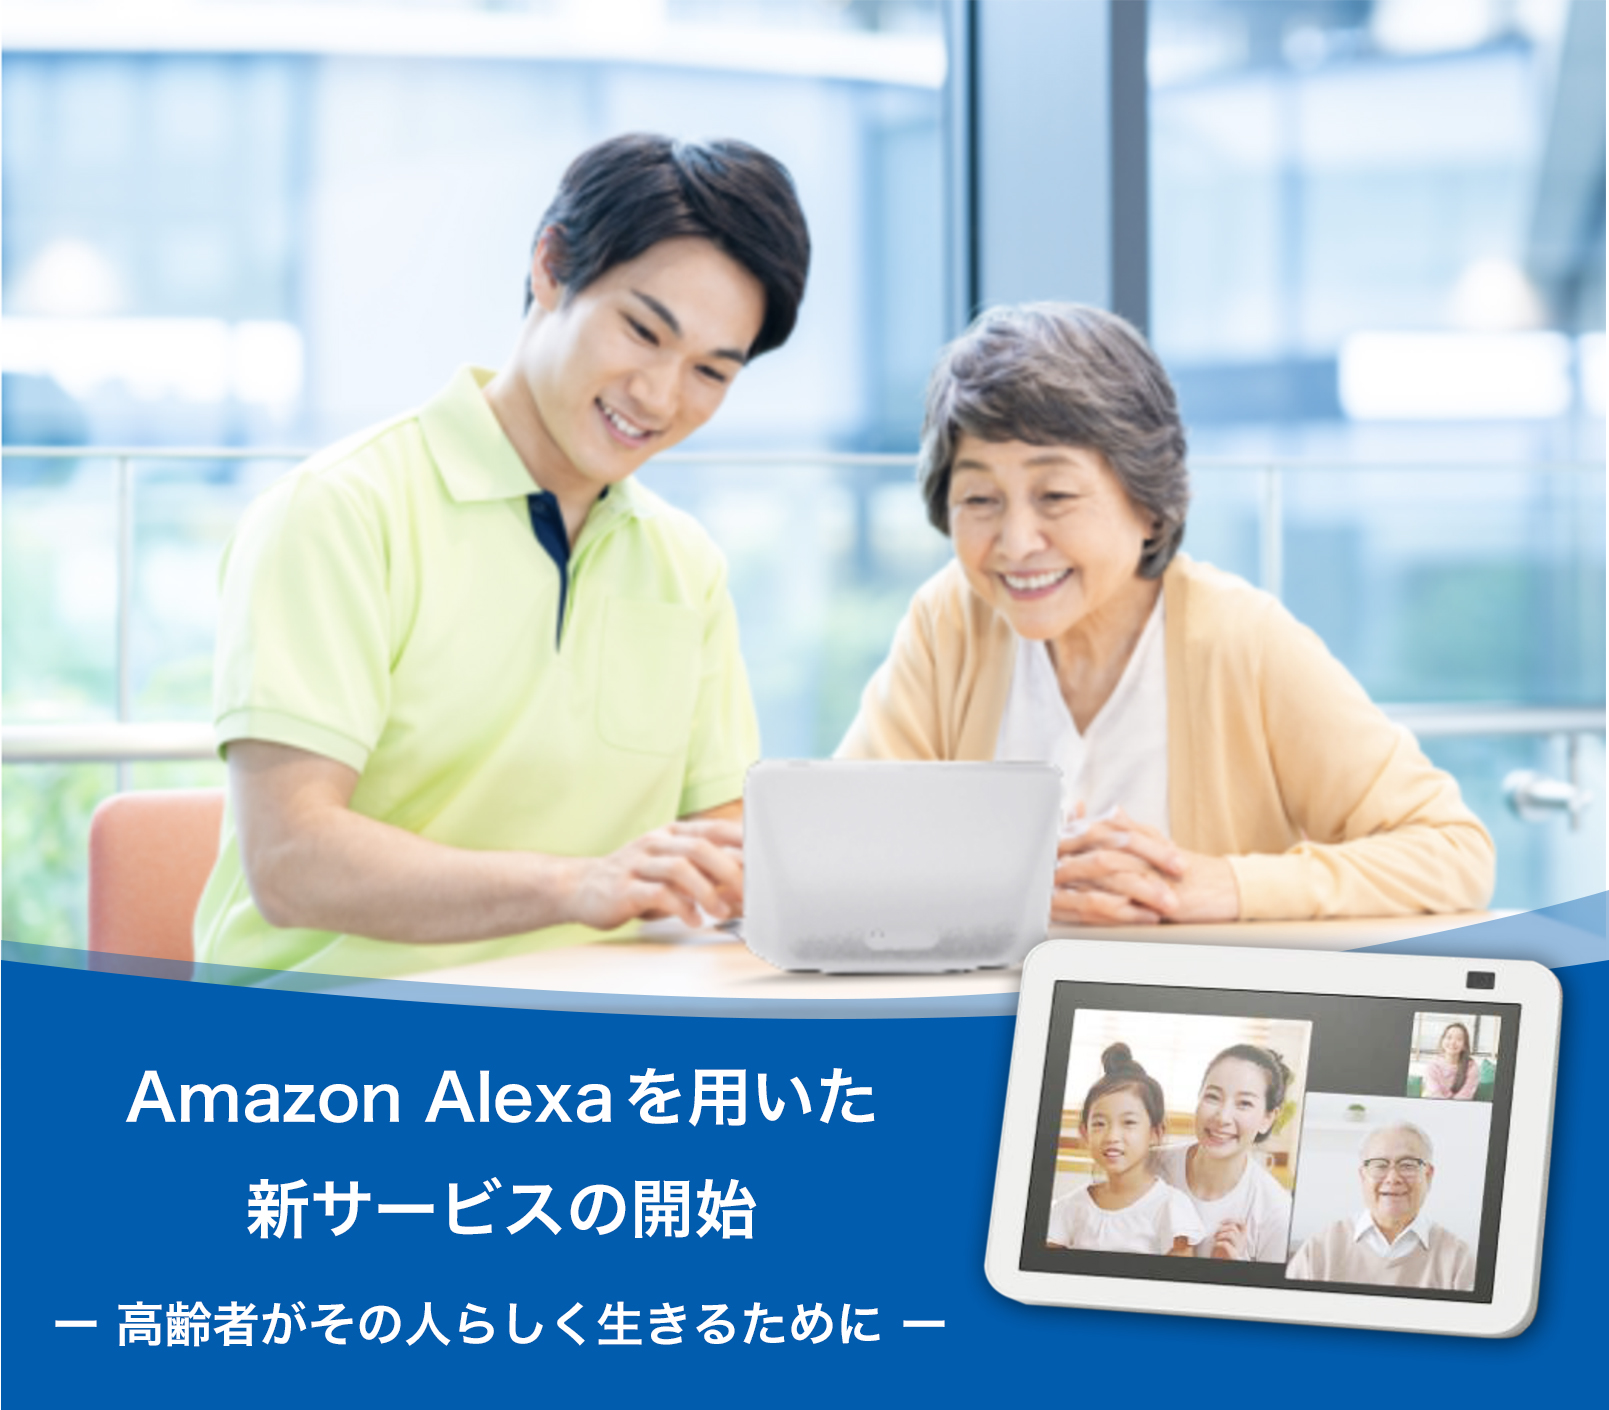 Amazon Alexa を用いた新サービスの開始 ～ 高齢者がその人らしく生きるために～